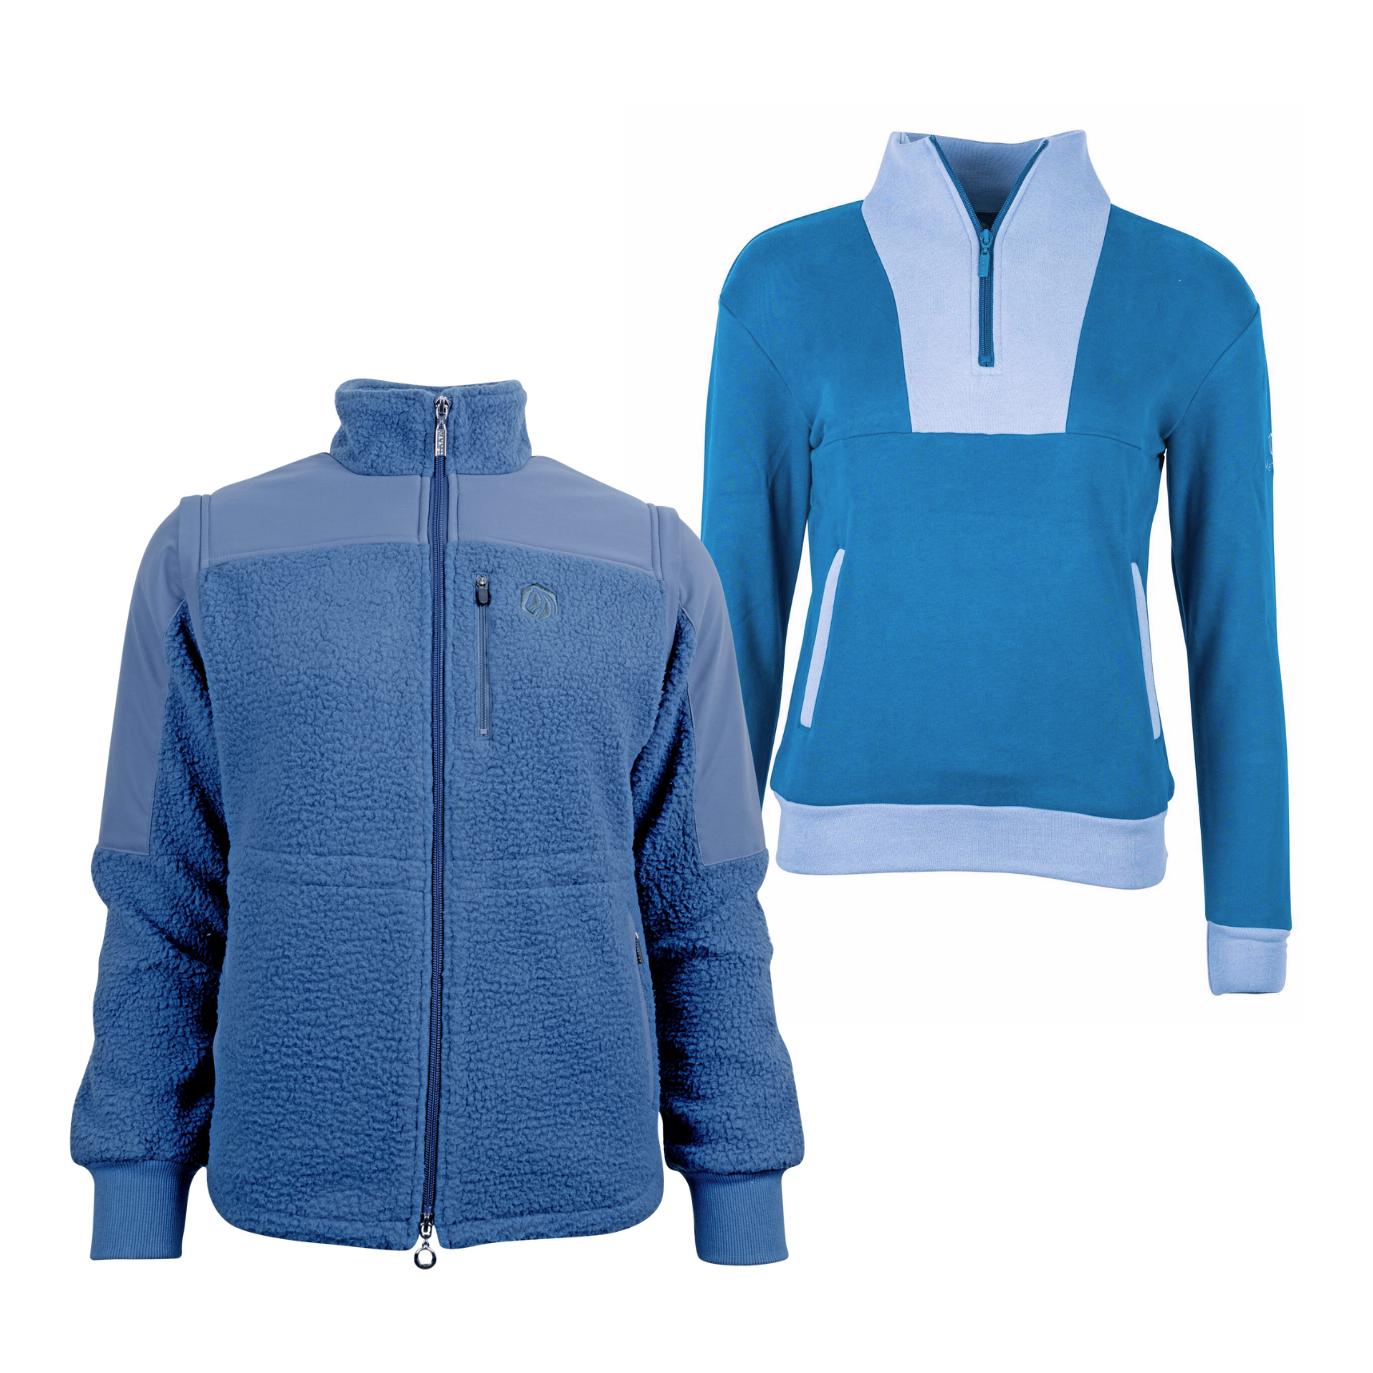 Marengo Outfit-Set Cosy Rides - Teddyfleece-Jacke & Zip Sweatshirt Farbe: Calm Blue / Ocean Blue, Grösse Pullover: M, Grösse Jacke: L von Marengo